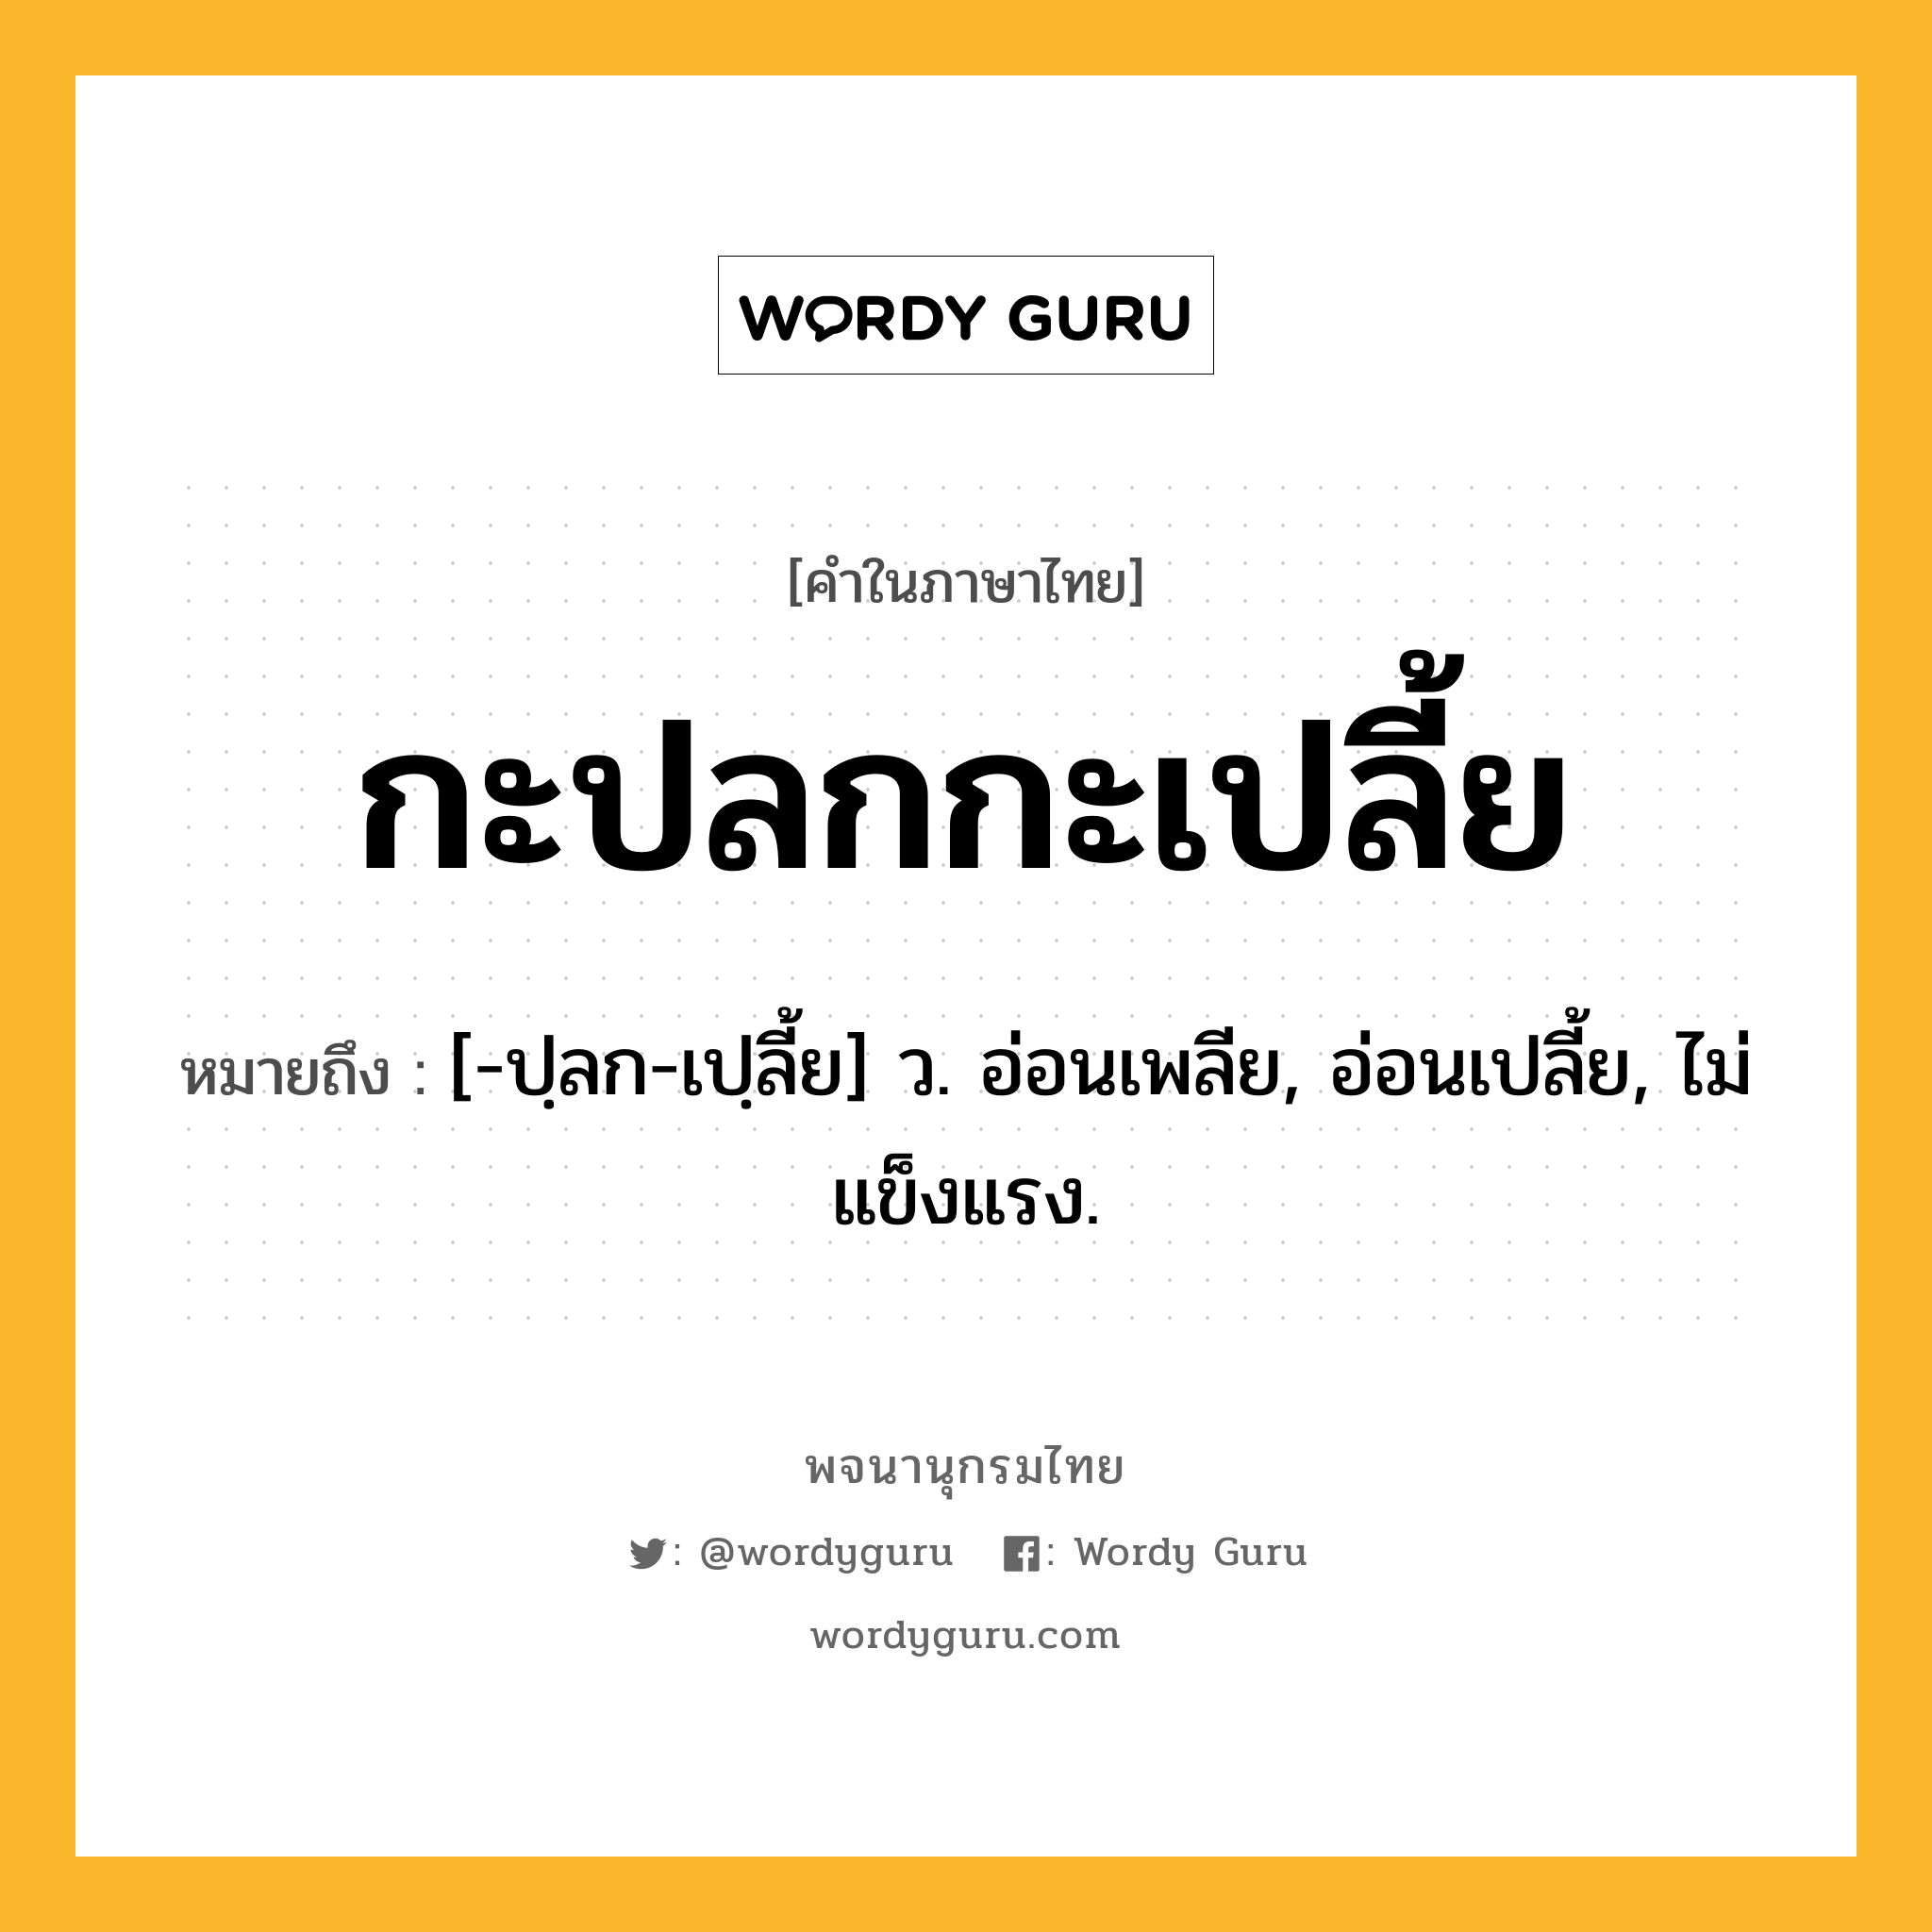 กะปลกกะเปลี้ย ความหมาย หมายถึงอะไร?, คำในภาษาไทย กะปลกกะเปลี้ย หมายถึง [-ปฺลก-เปฺลี้ย] ว. อ่อนเพลีย, อ่อนเปลี้ย, ไม่แข็งแรง.